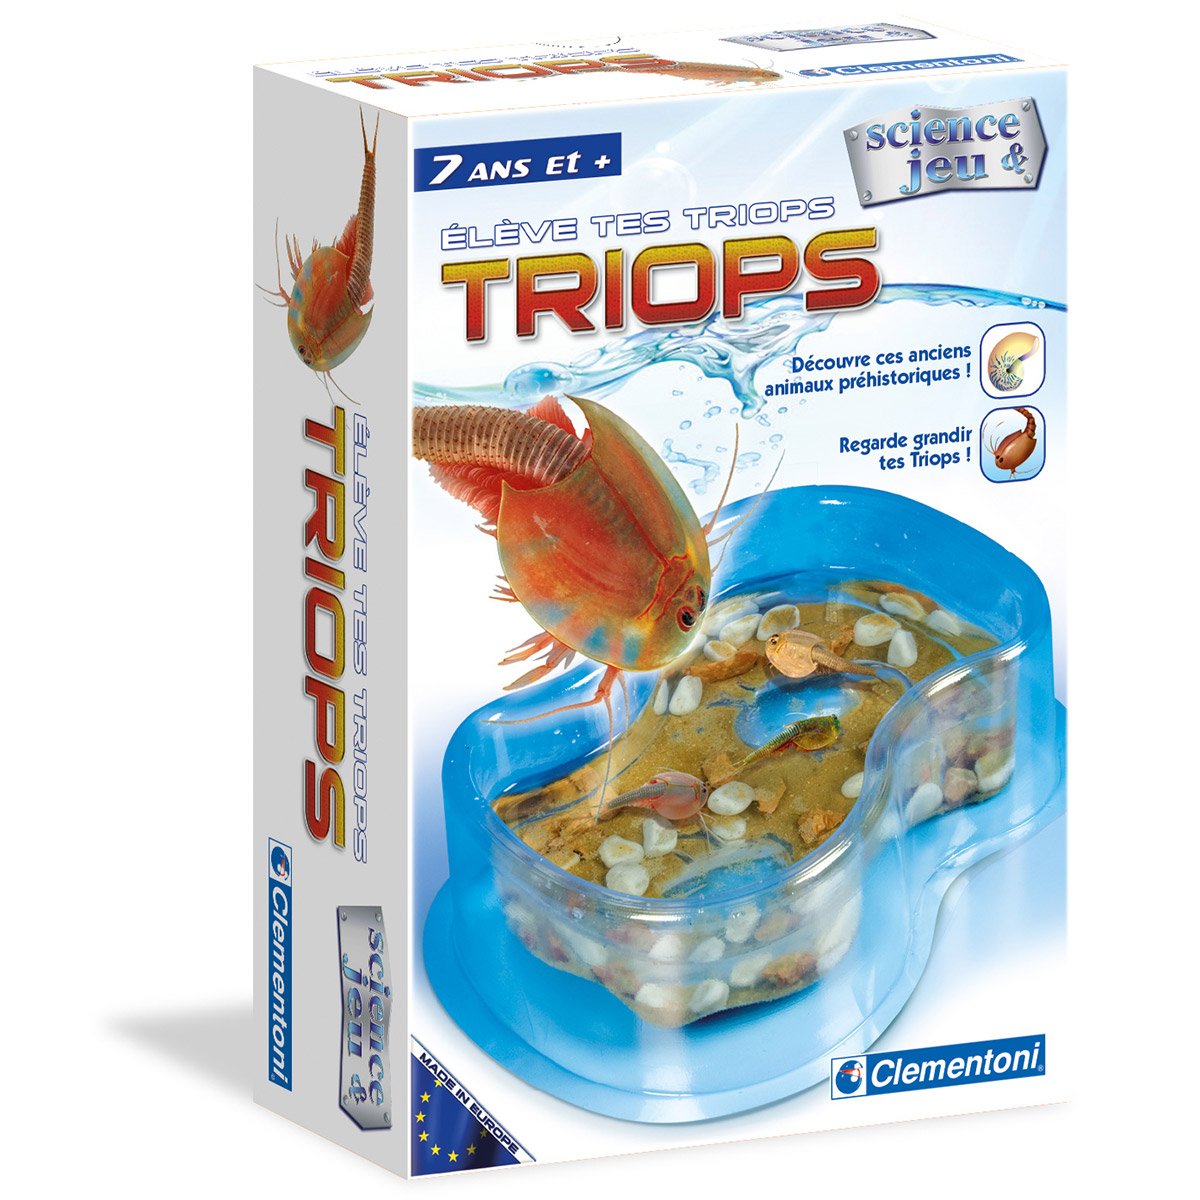 Triops (crustacé préhistorique)